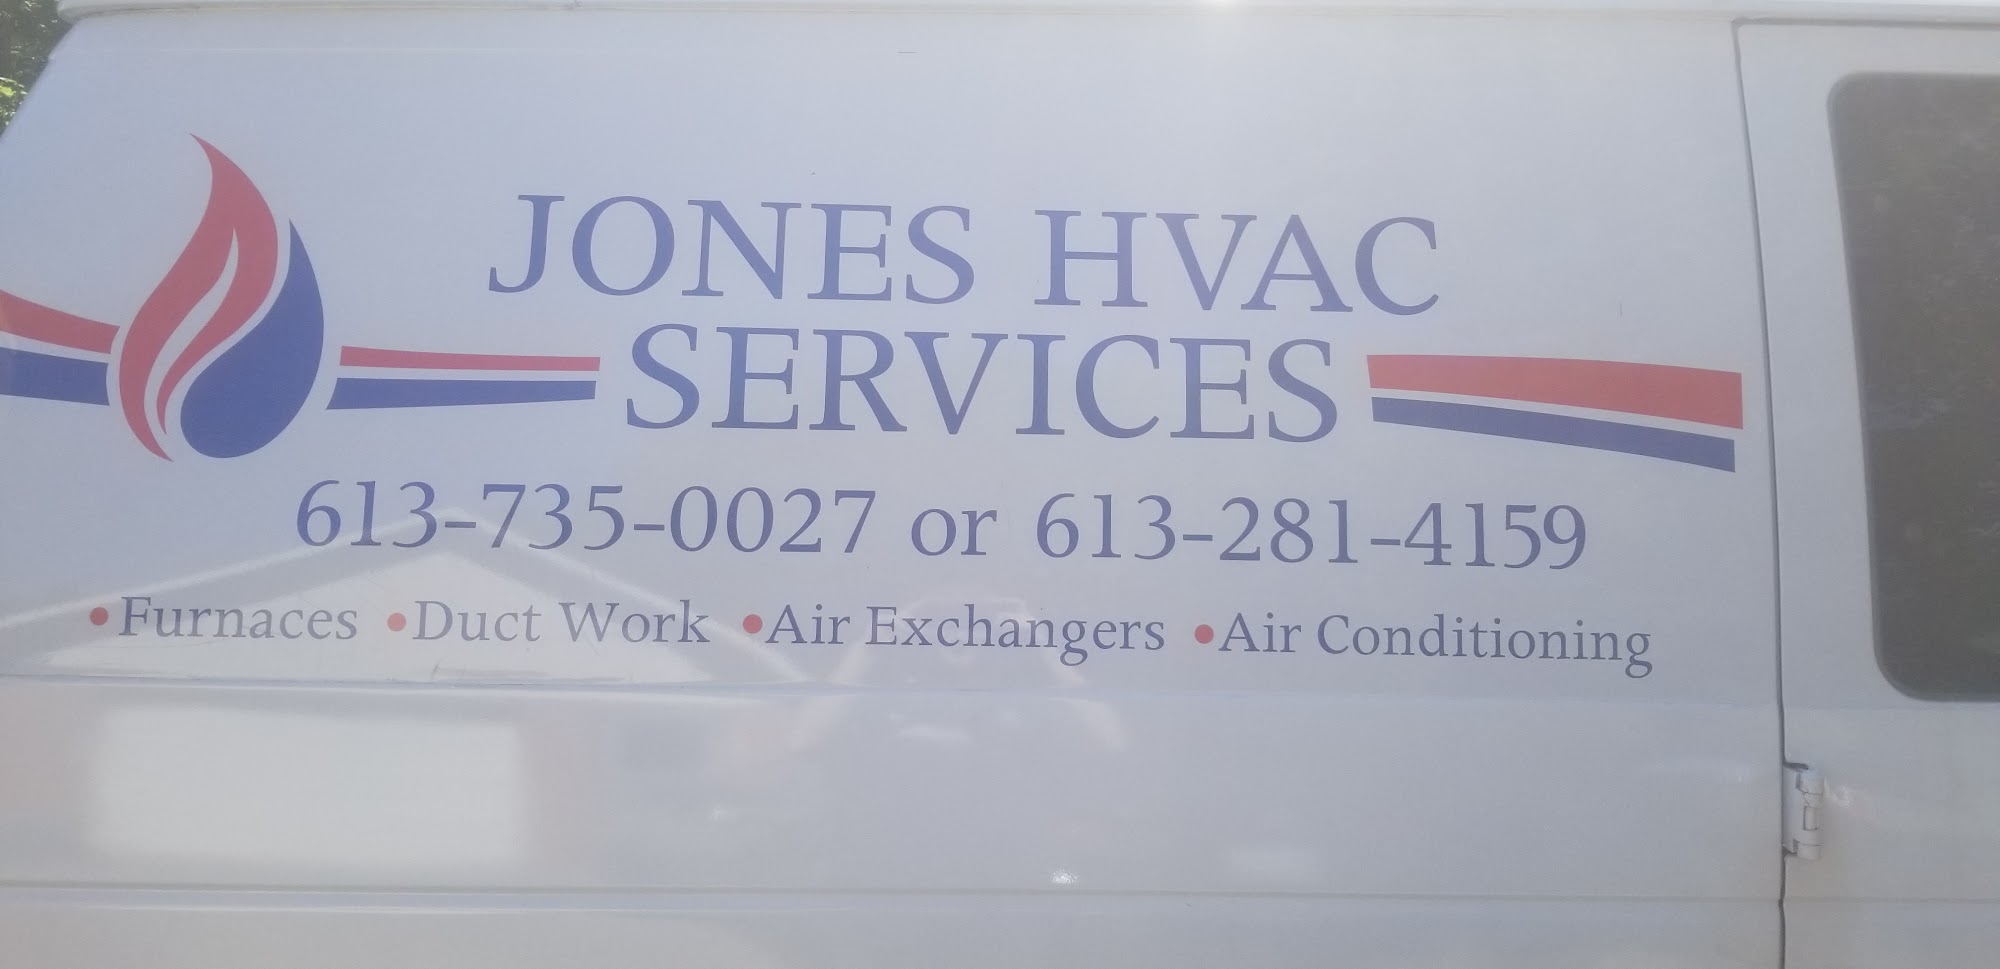 Jones HVAC